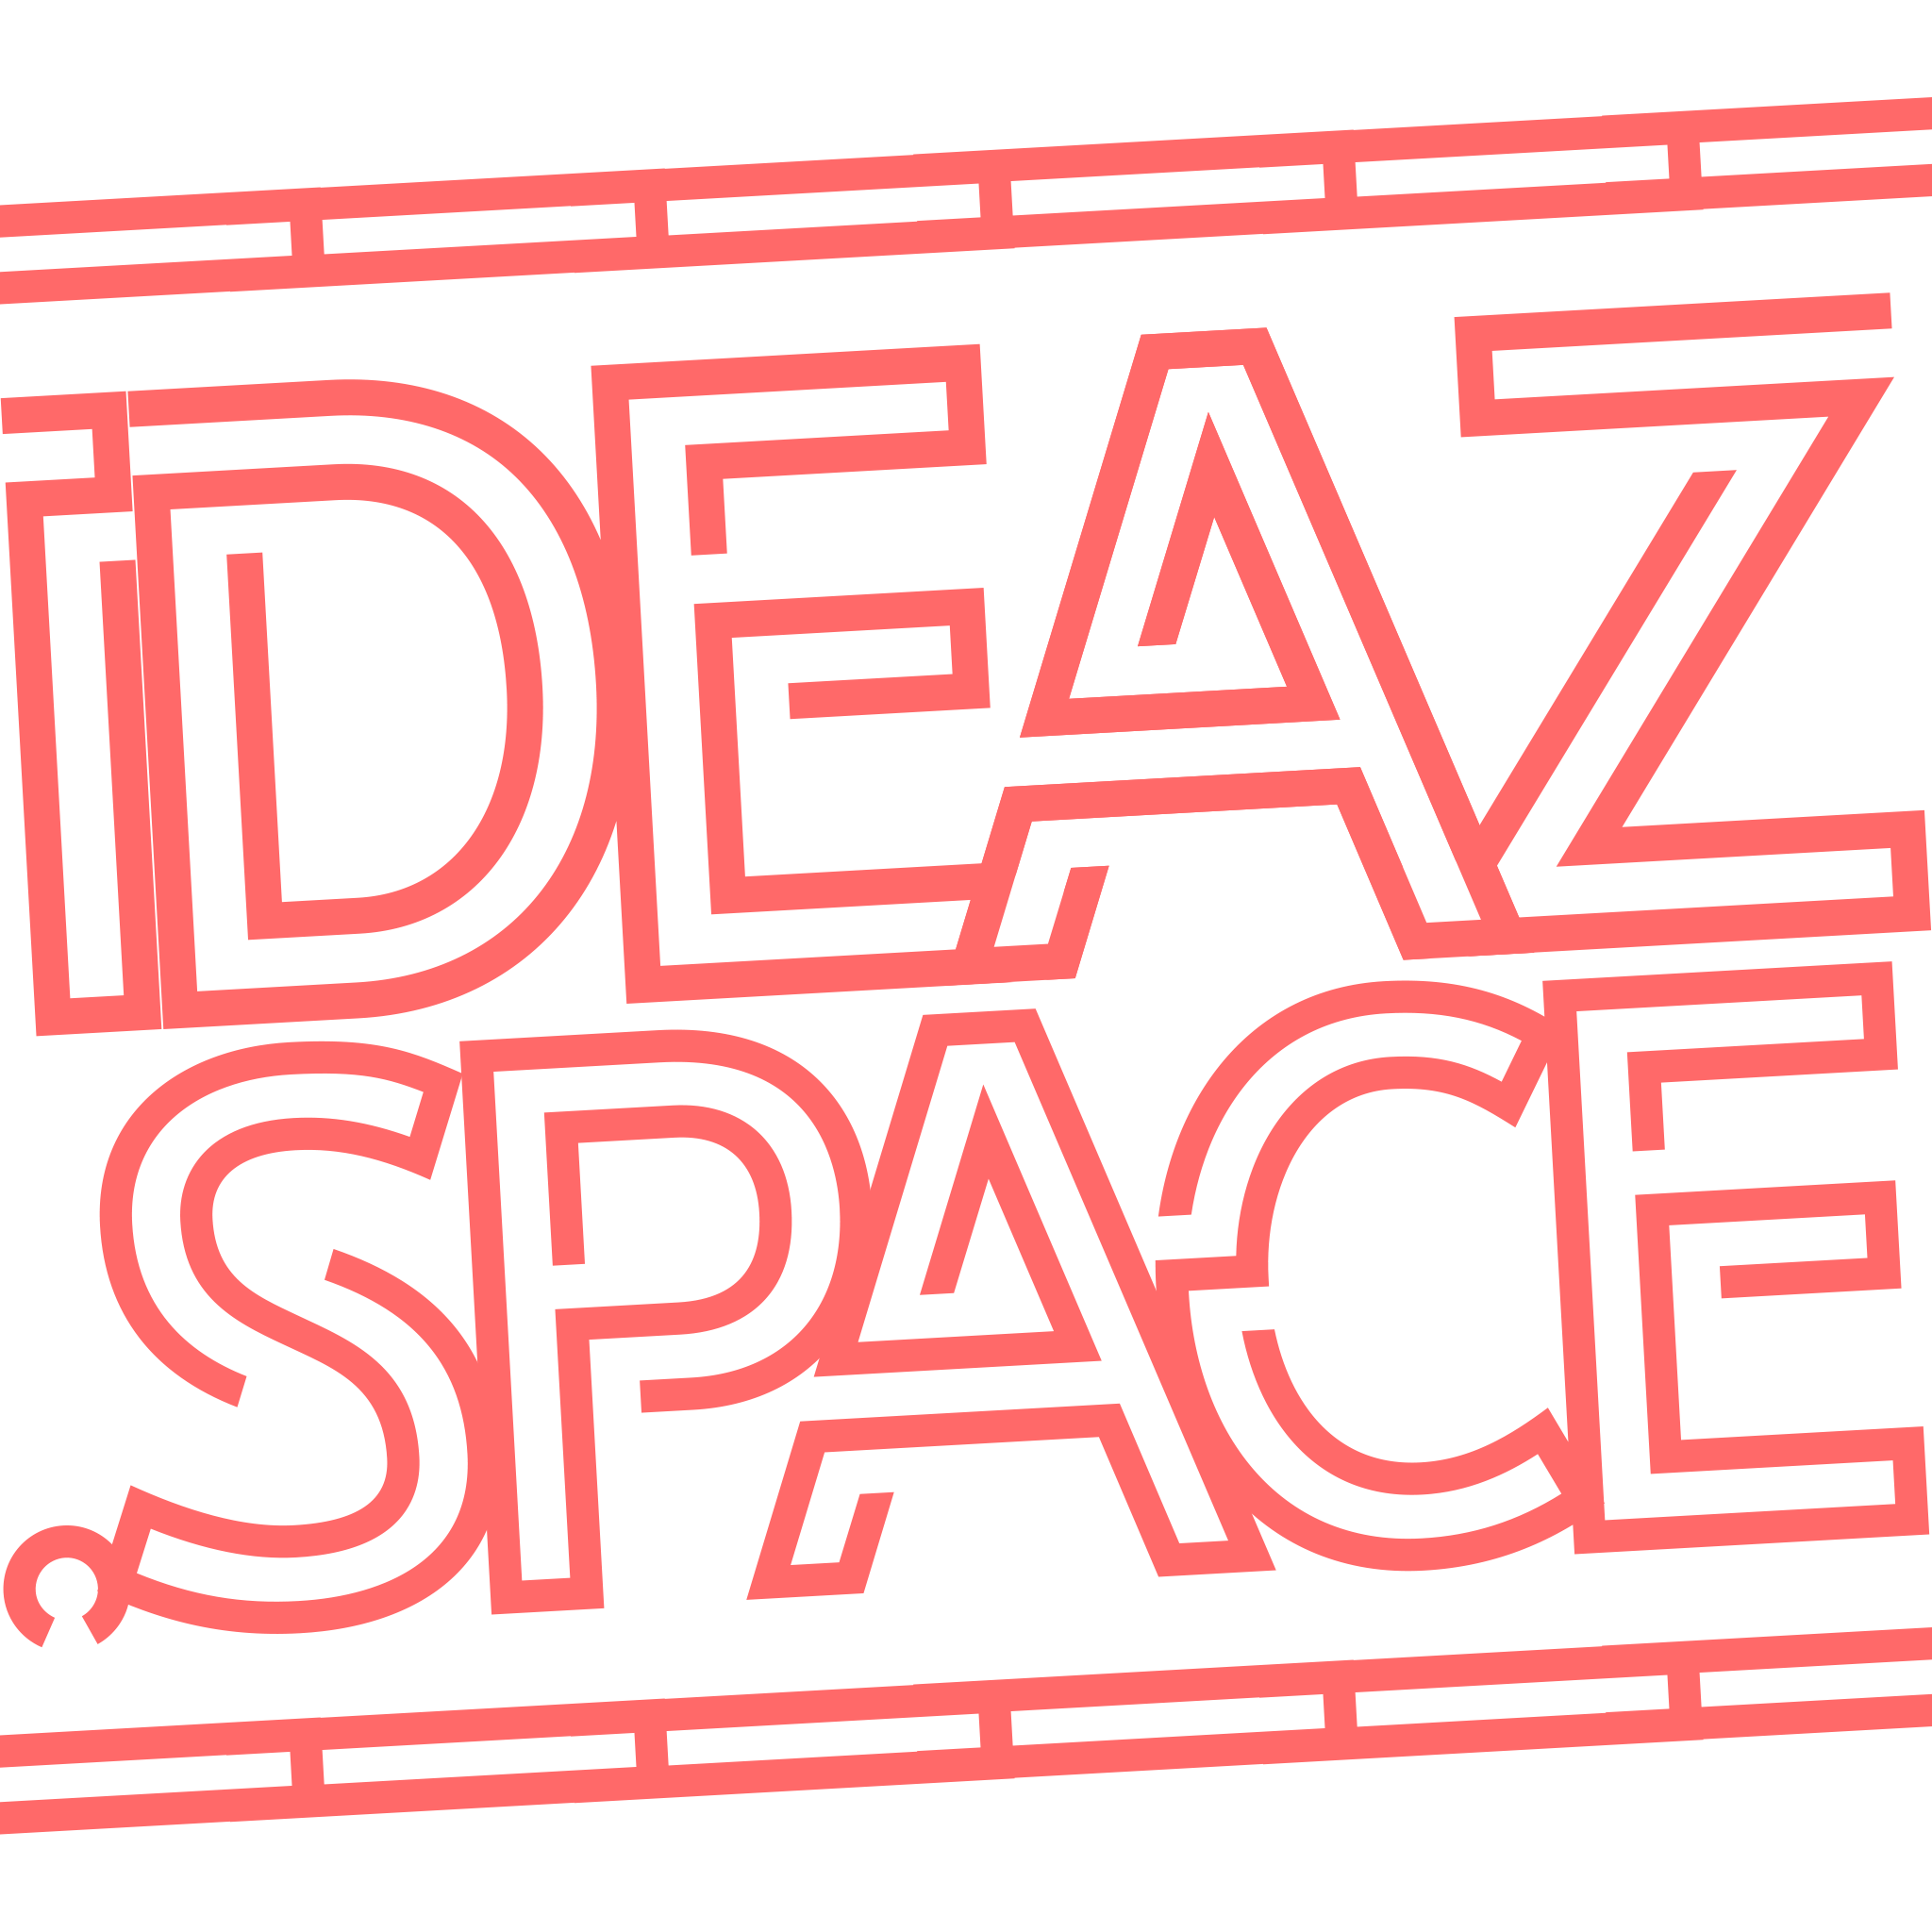 Ideaz Space